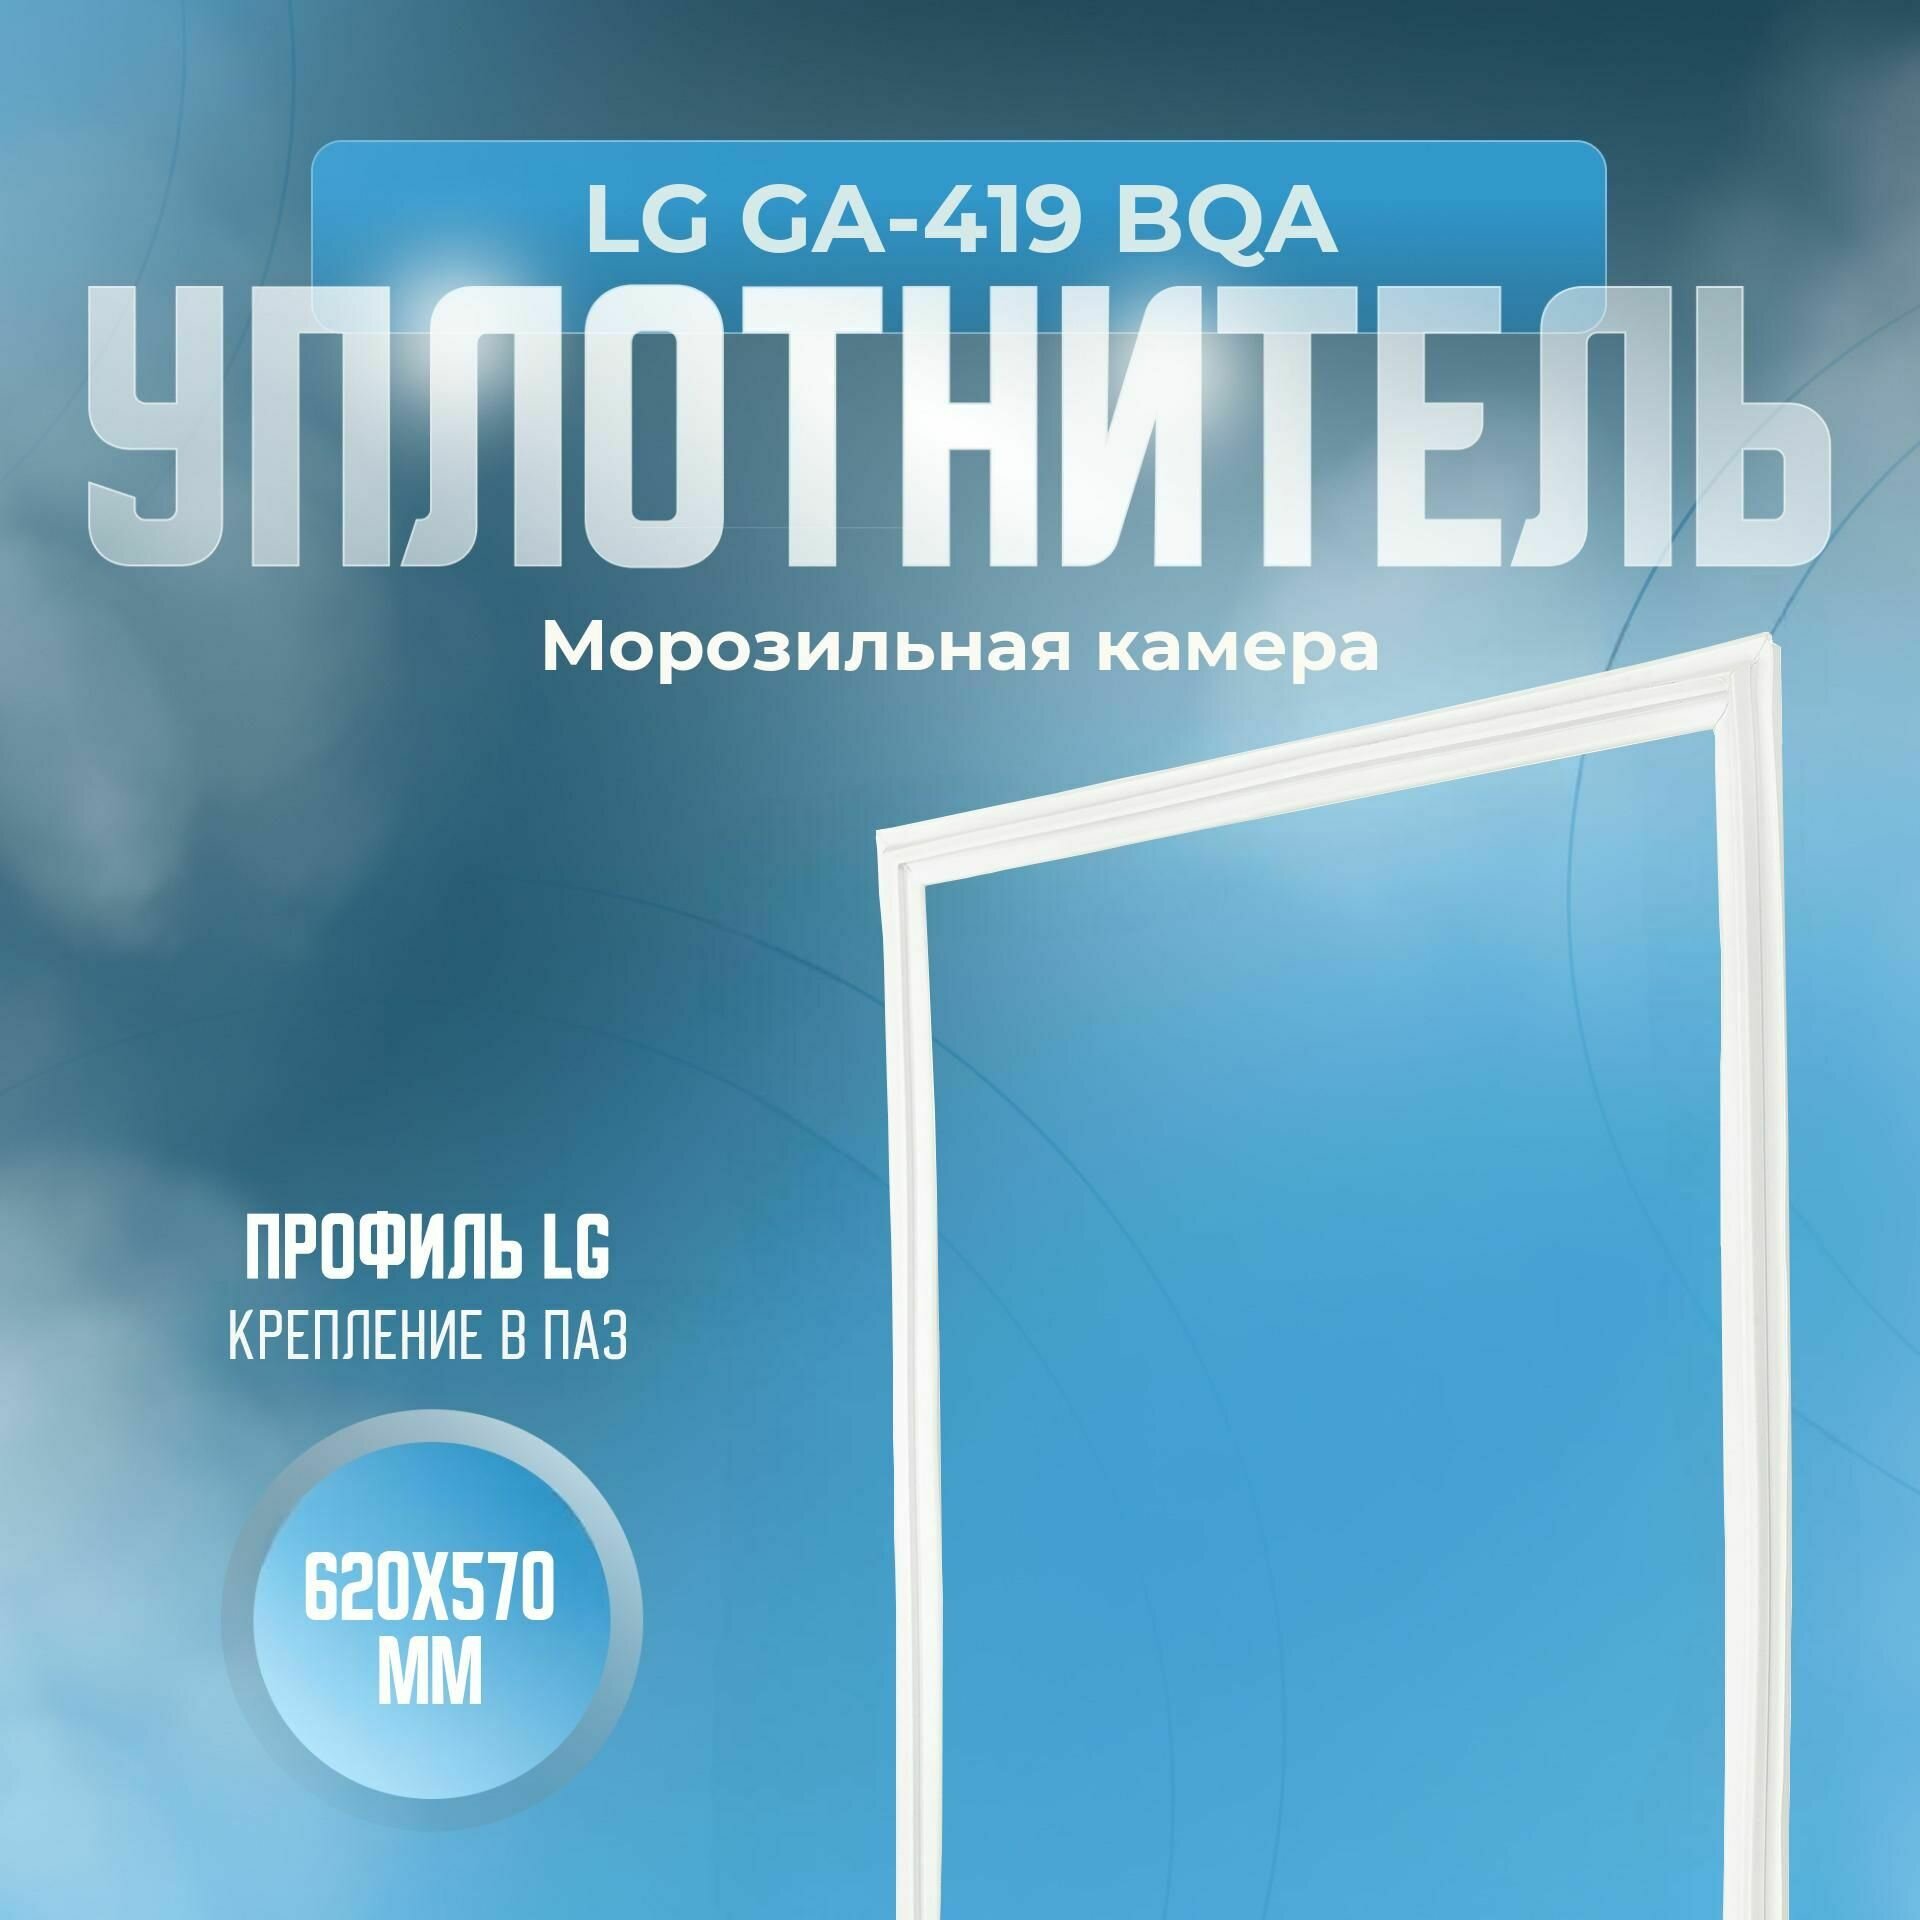 Уплотнитель LG GA-419 BQA. м. к, Размер - 620х570 мм. LG